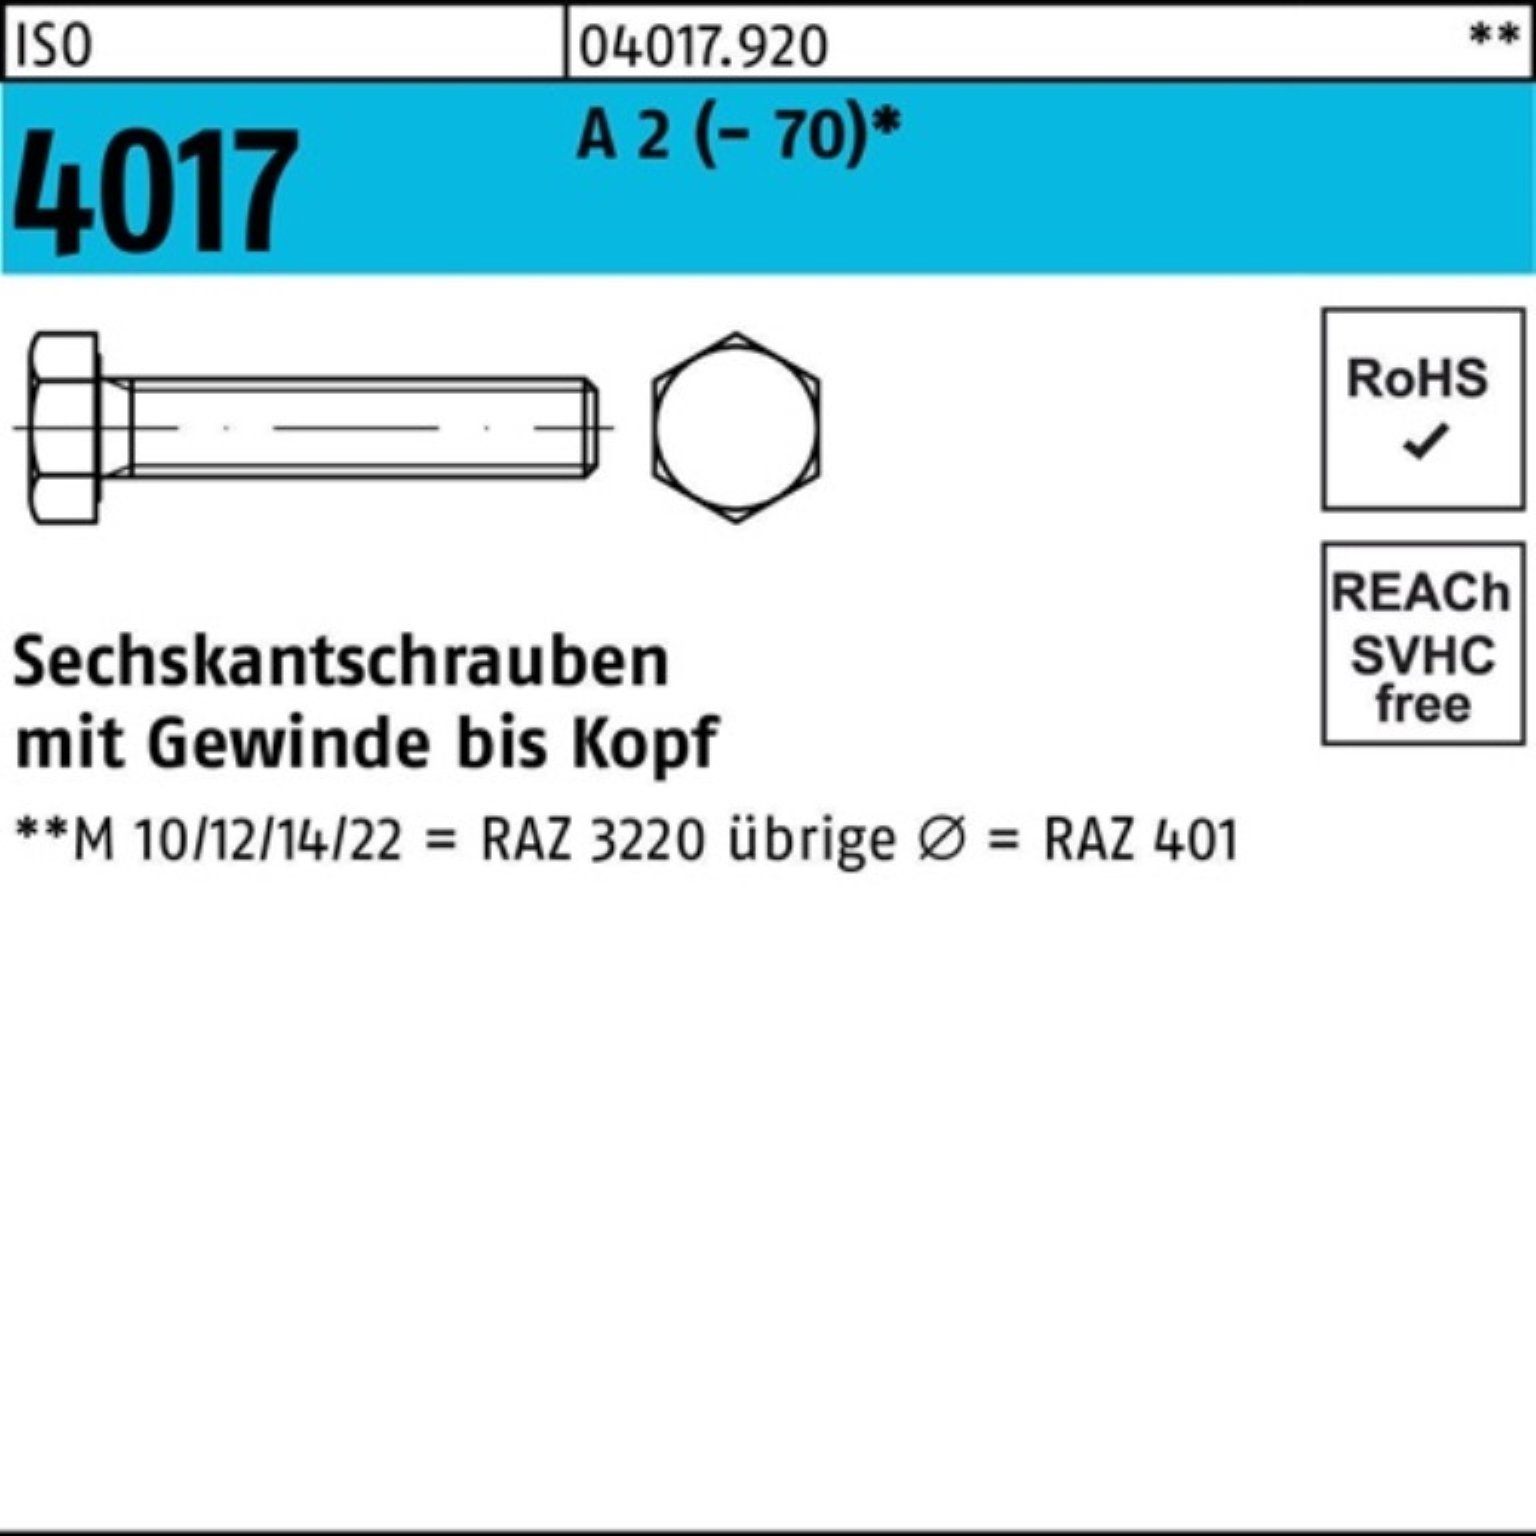 Bufab Sechskantschraube 100er Pack Sechskantschraube ISO 4017 VG M24x 40 A 2 (70) 20 Stück